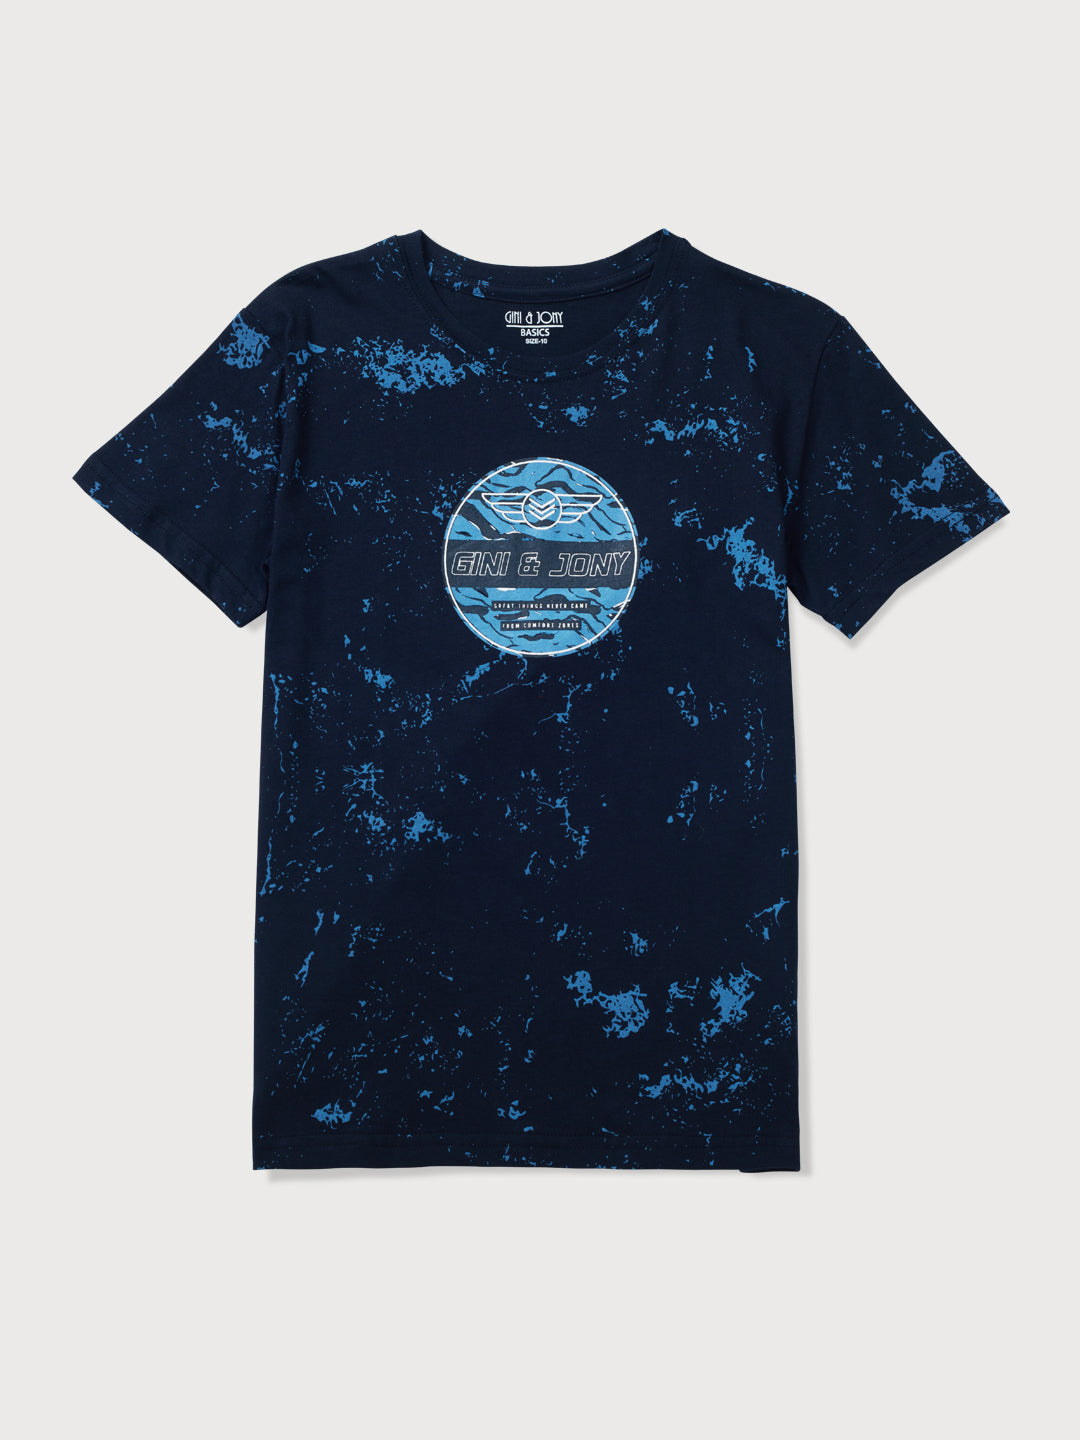 Boys Navy Blue Printed Cotton T-Shirt